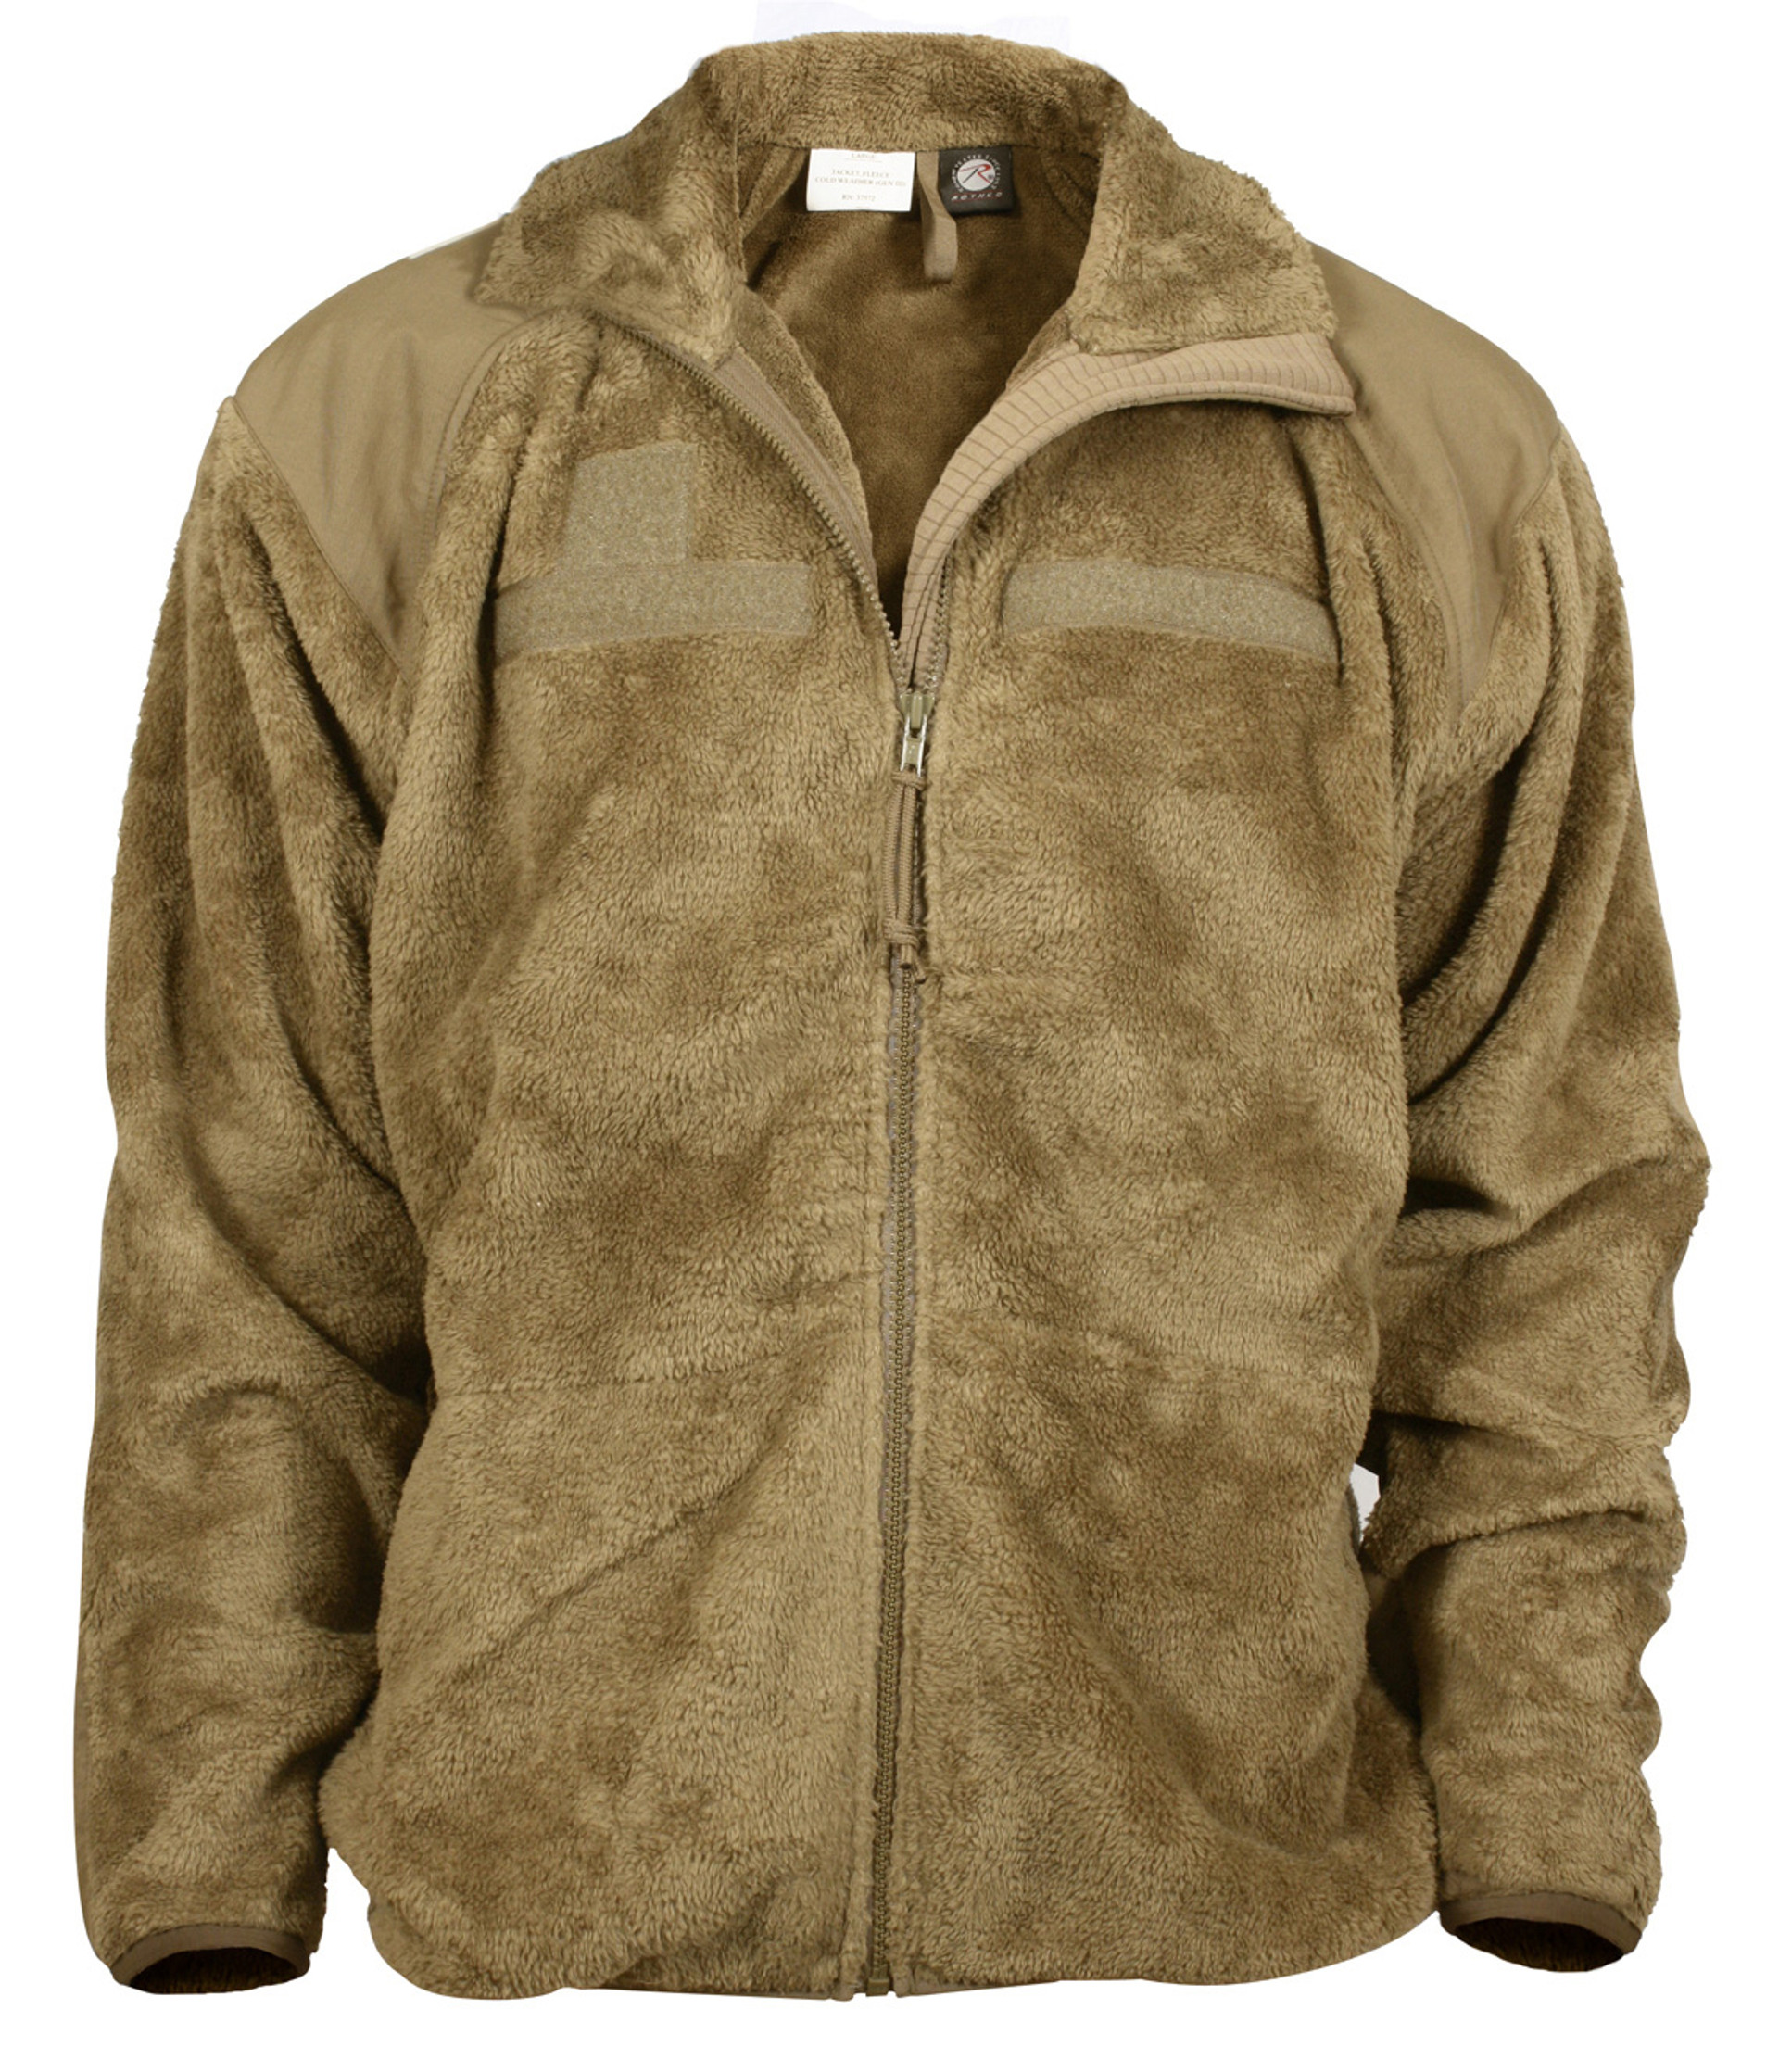 Shop Polar Fleece Jackets - Fatigues Army Navy